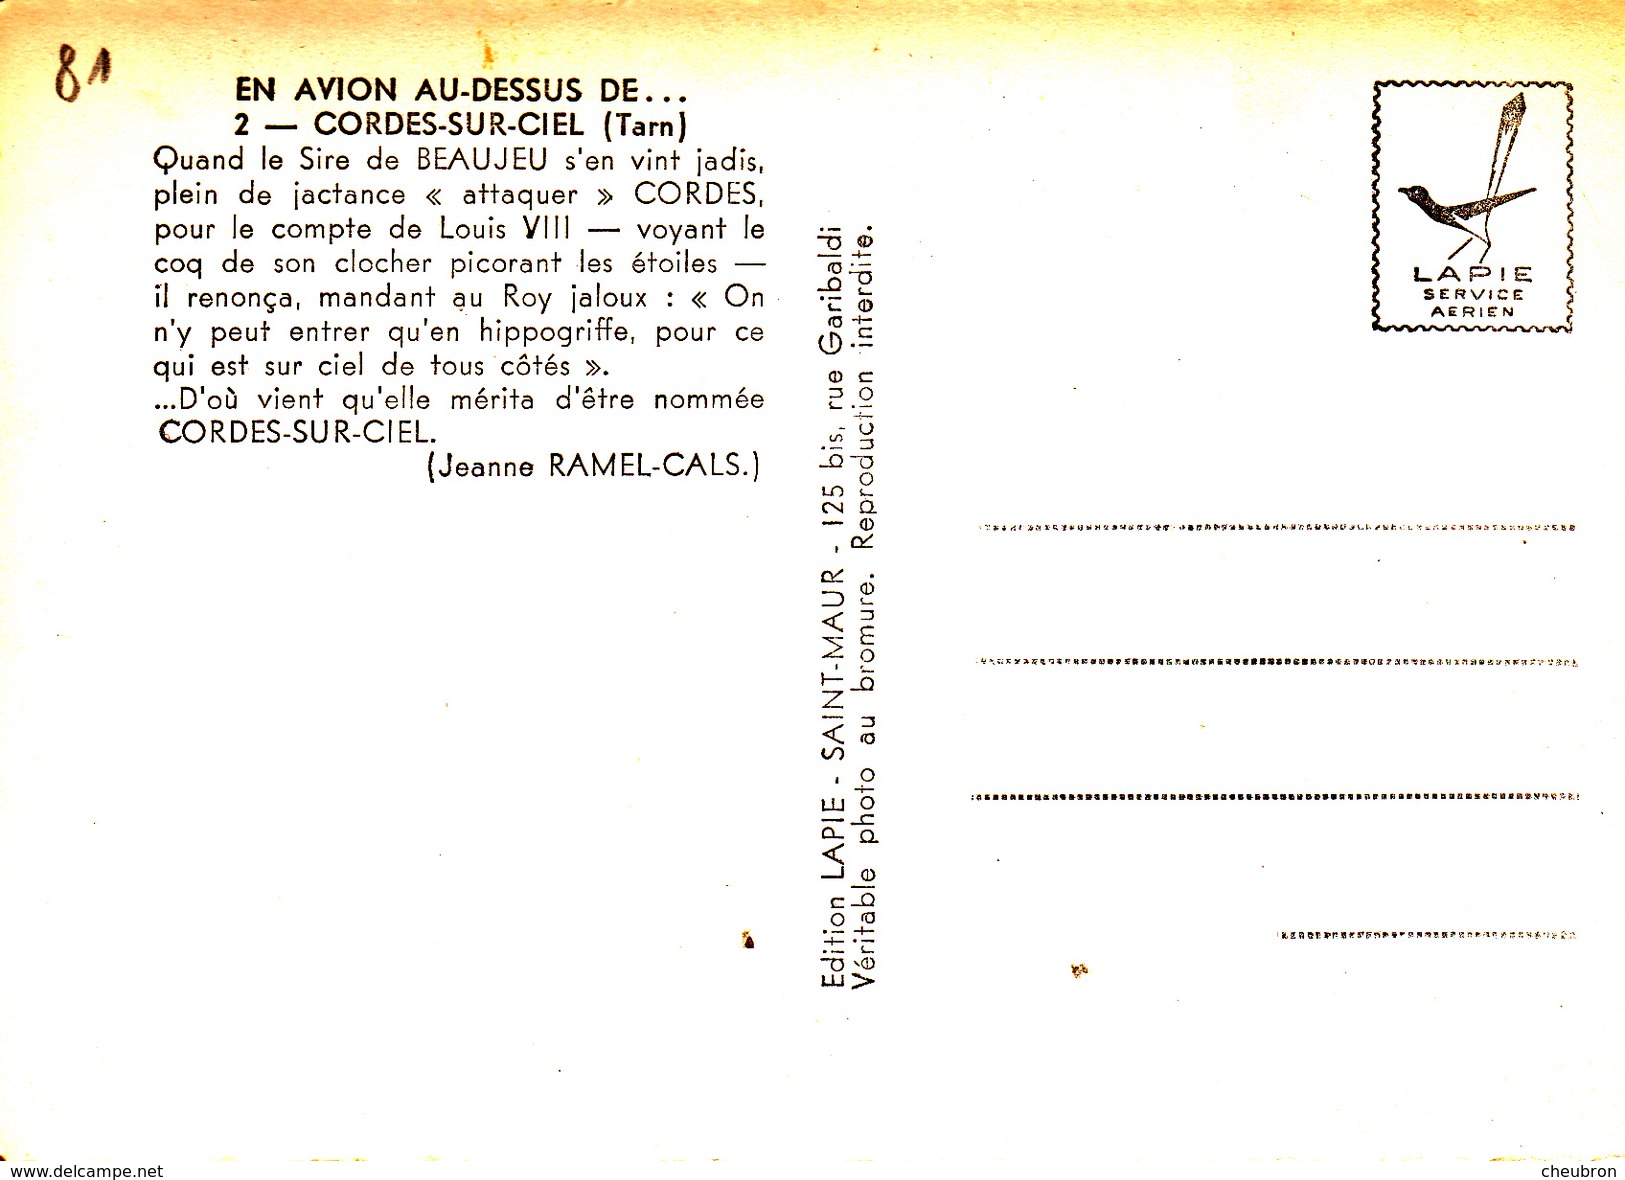 81. CORDES. VUE AERIENNE ANNÉES 50. COLLECTION "EN AVION AU DESSUS DE...." - Cordes